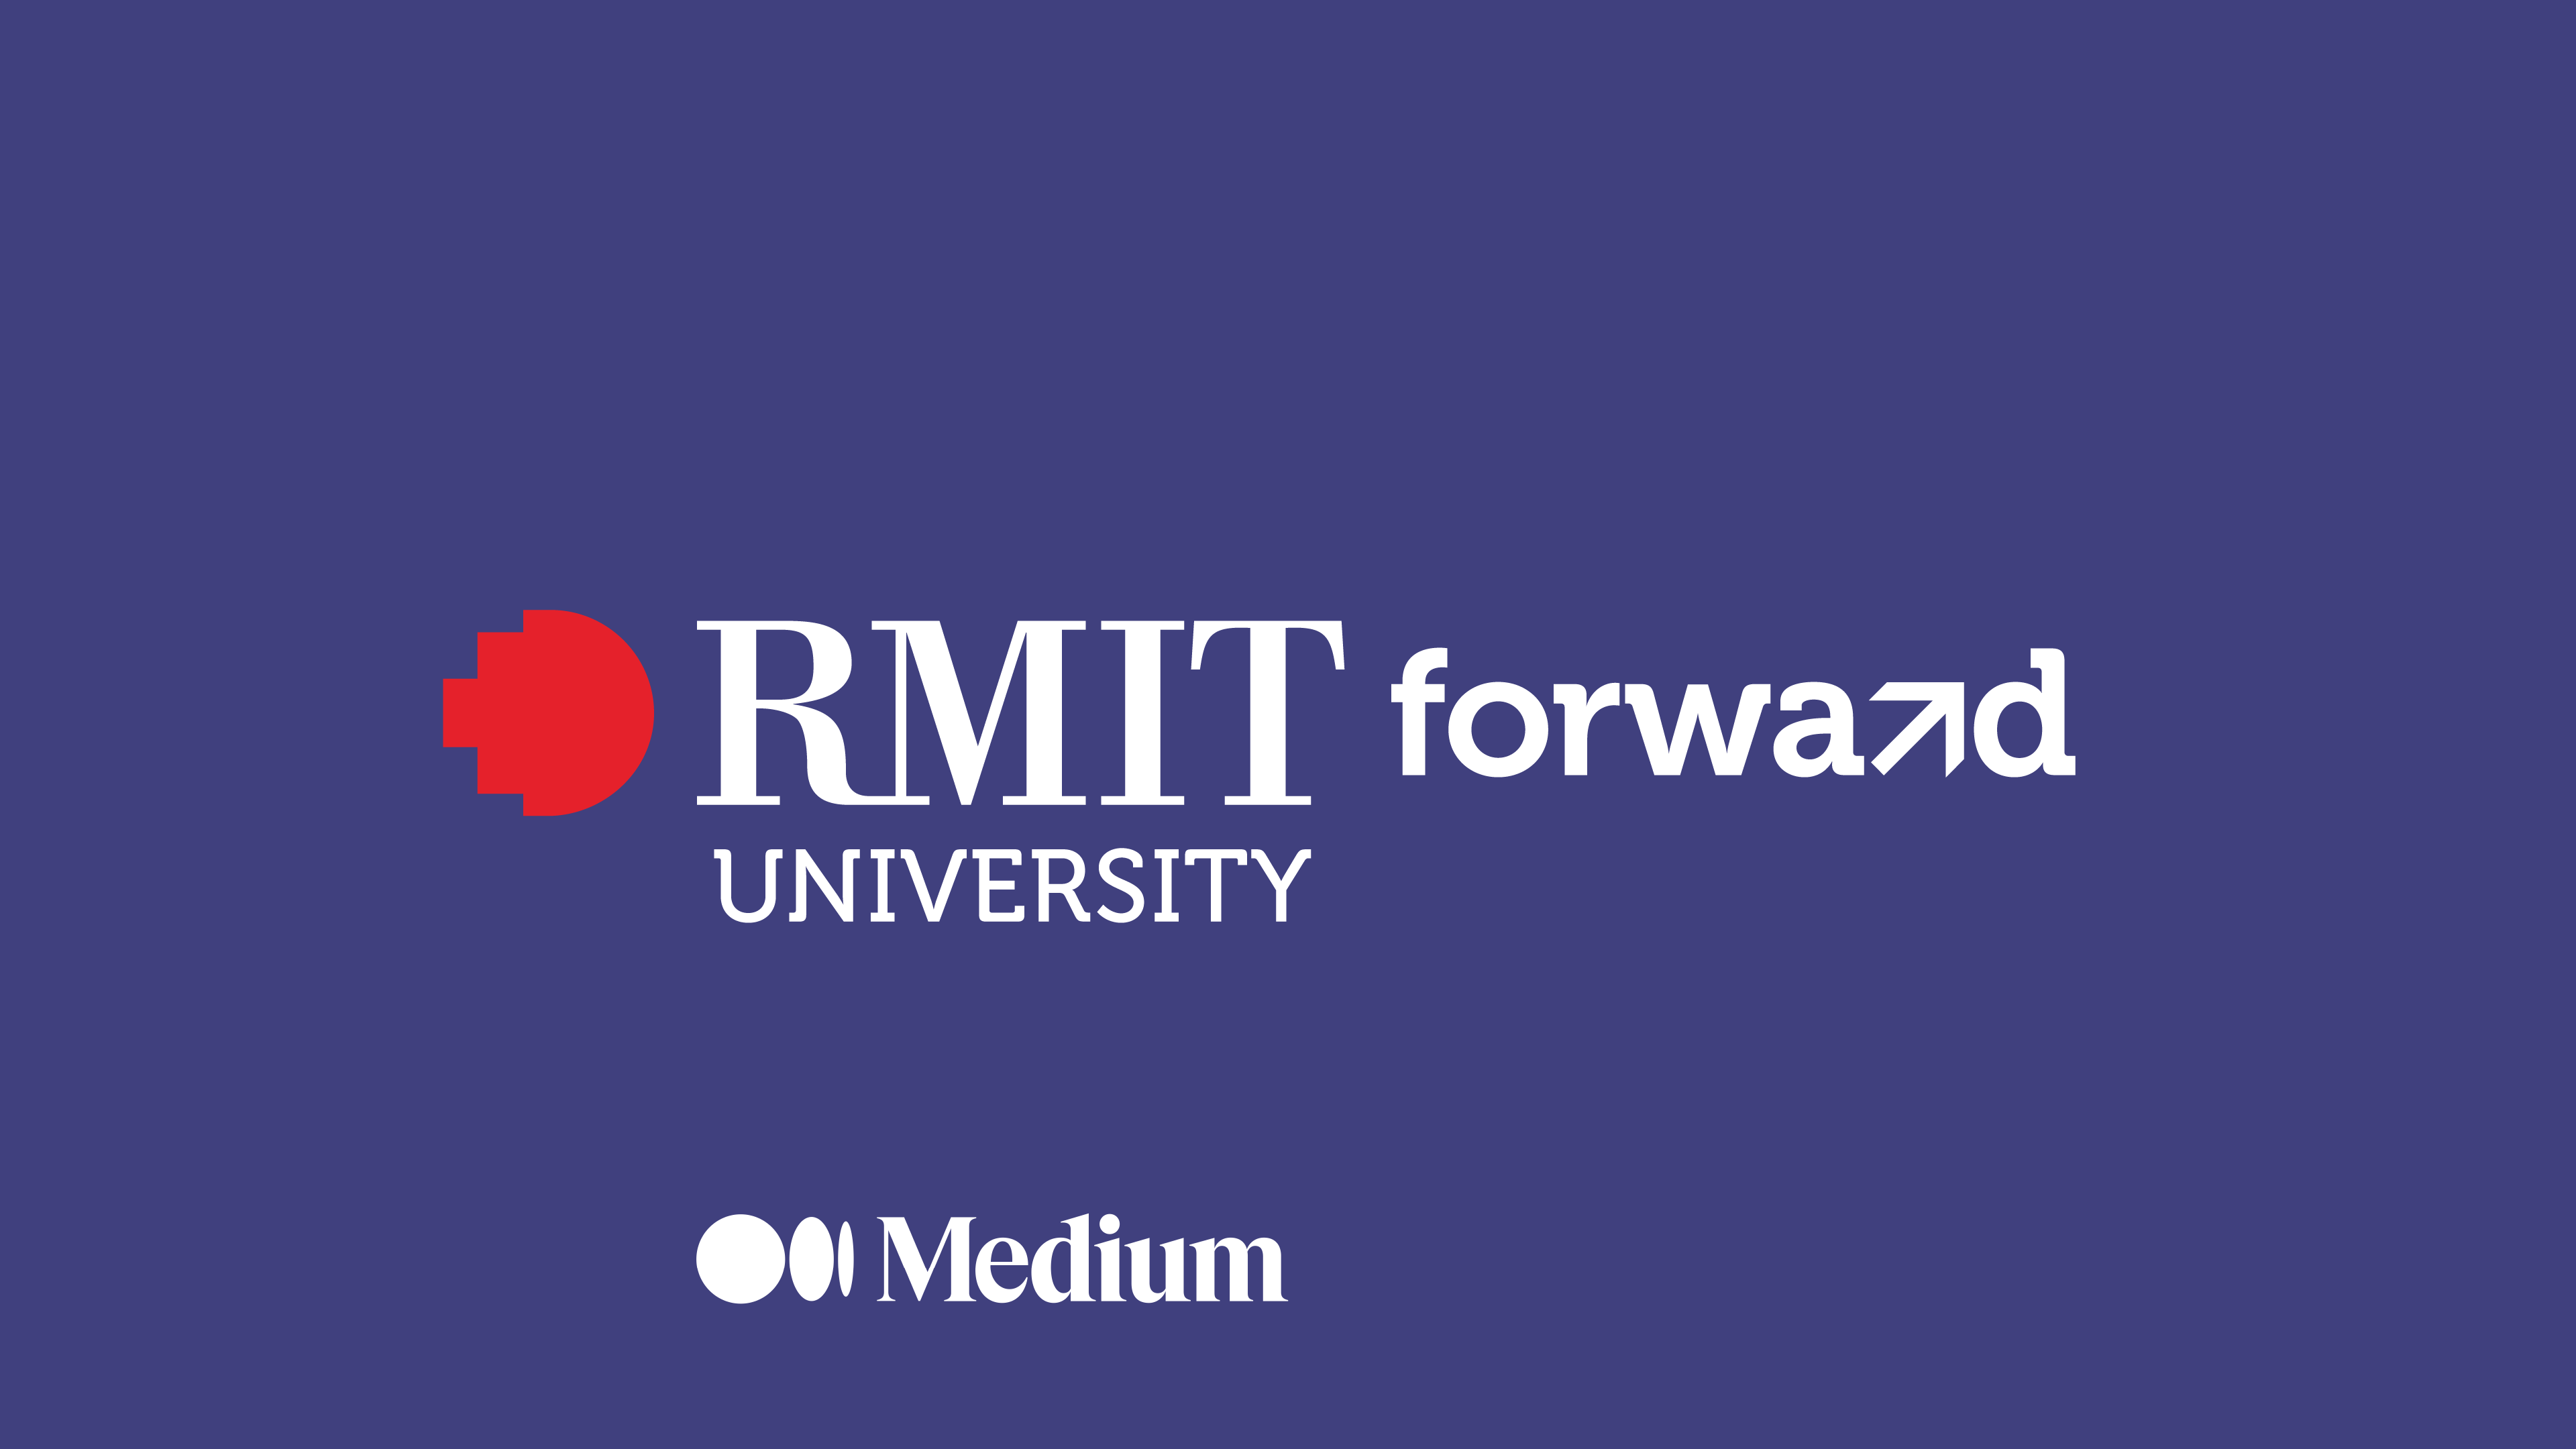 RMIT University Forward Medium logo